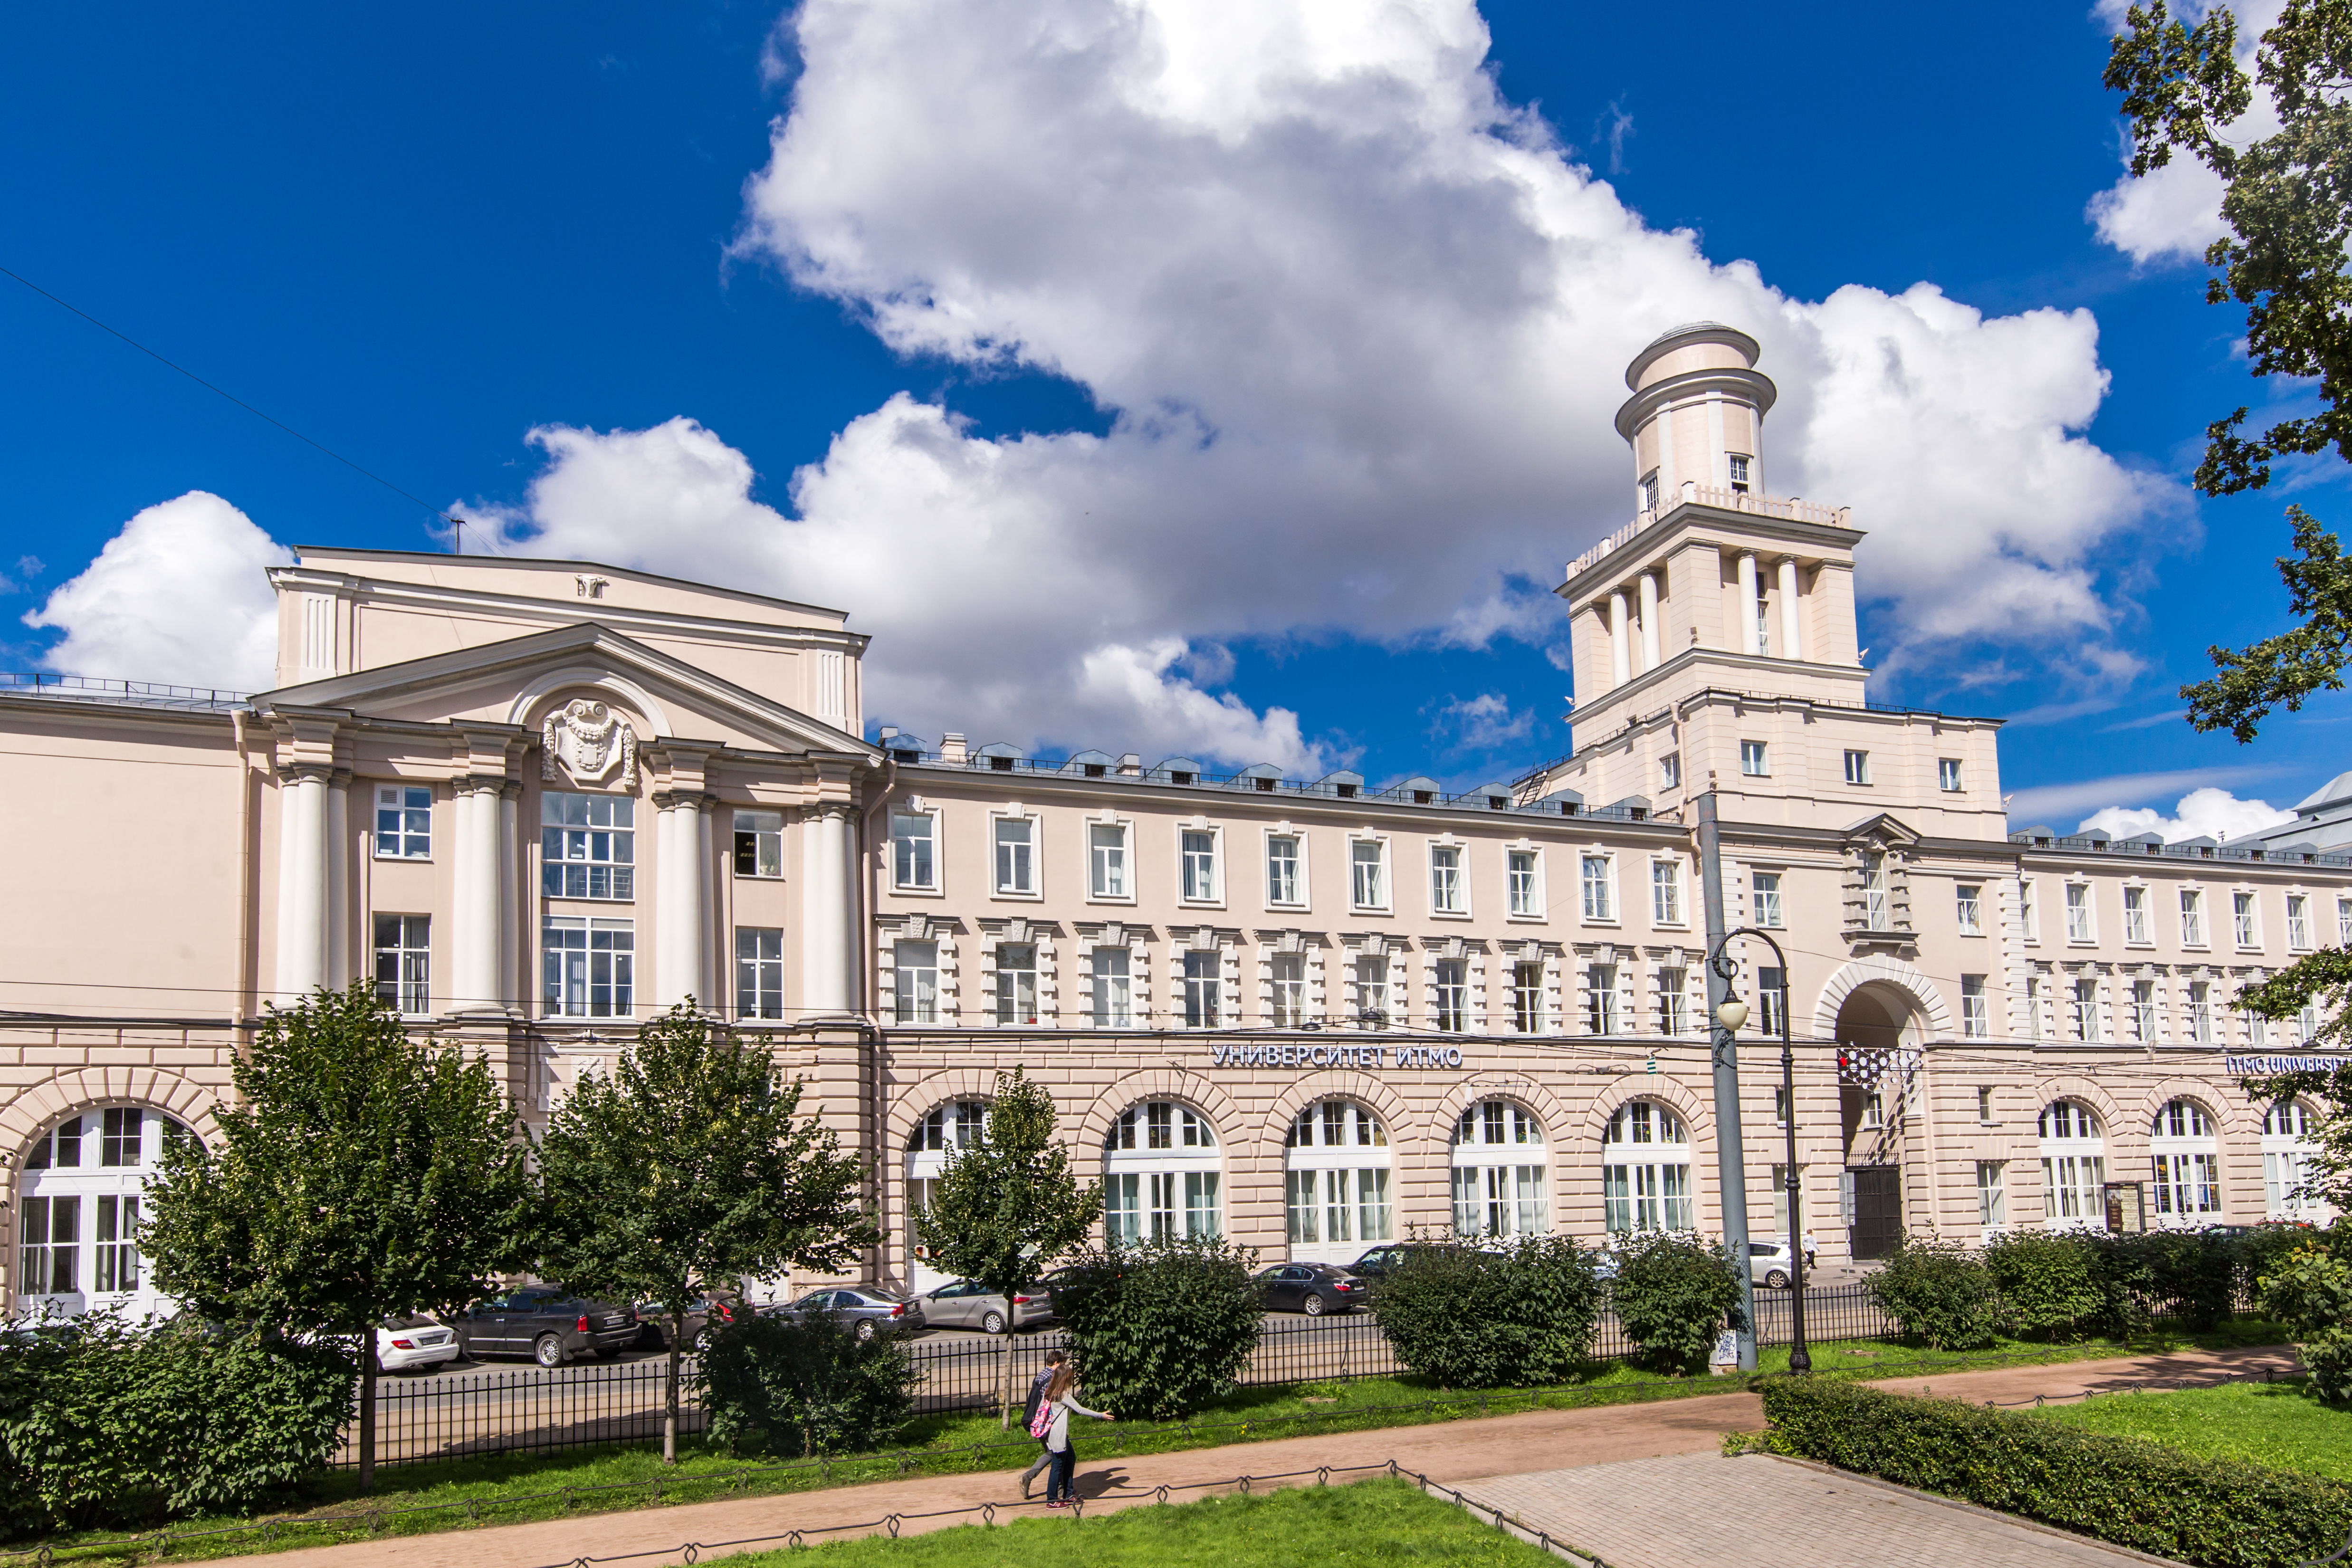 La universidad ITMO figura por primera vez en el ranking directamente en las posiciones 350-400 y ocupando el tercer puesto entre las universidades rusas.